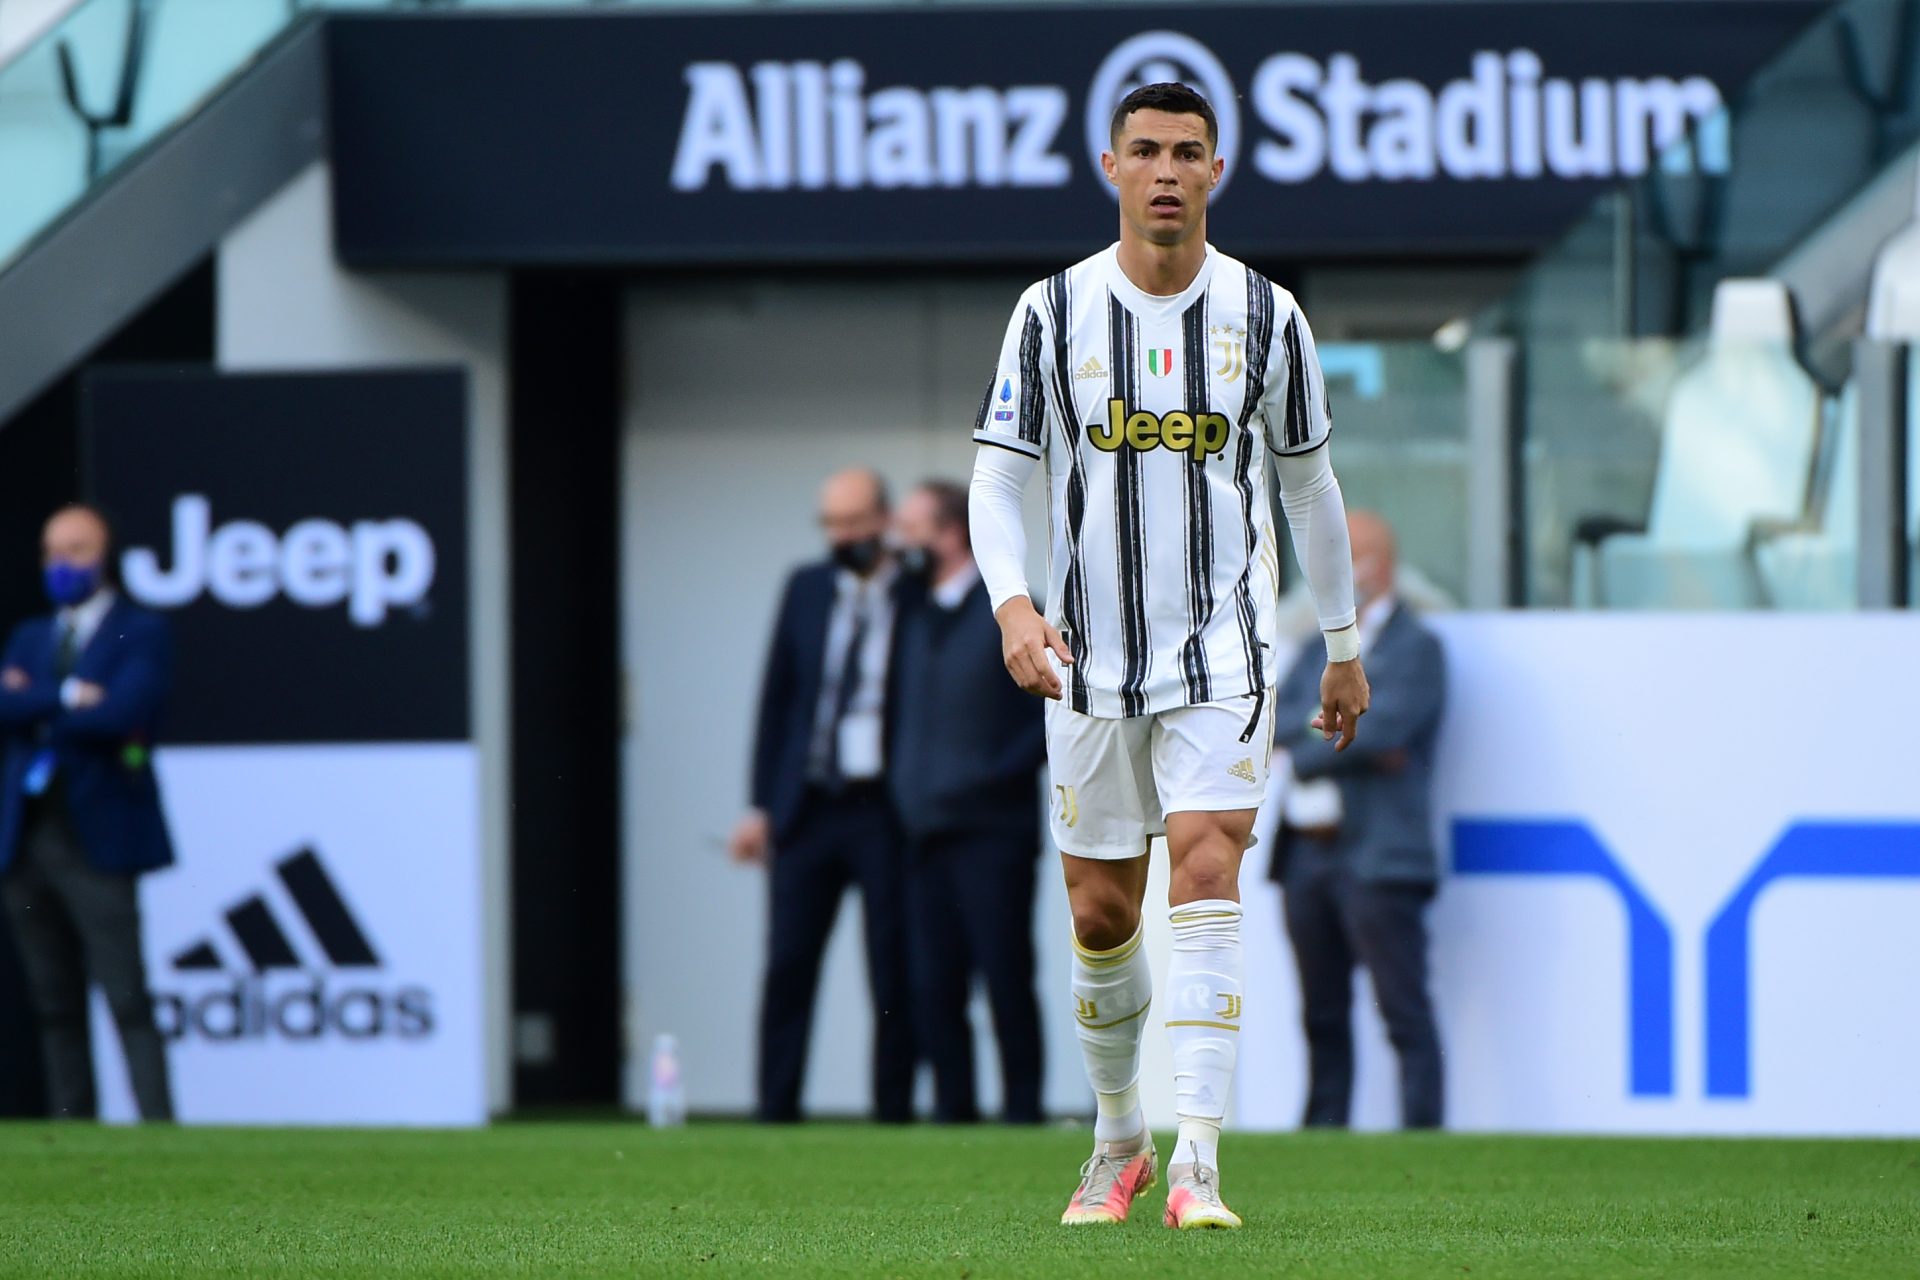 Victoire de Ronaldo contre Juventus - Compensation Millionnaire